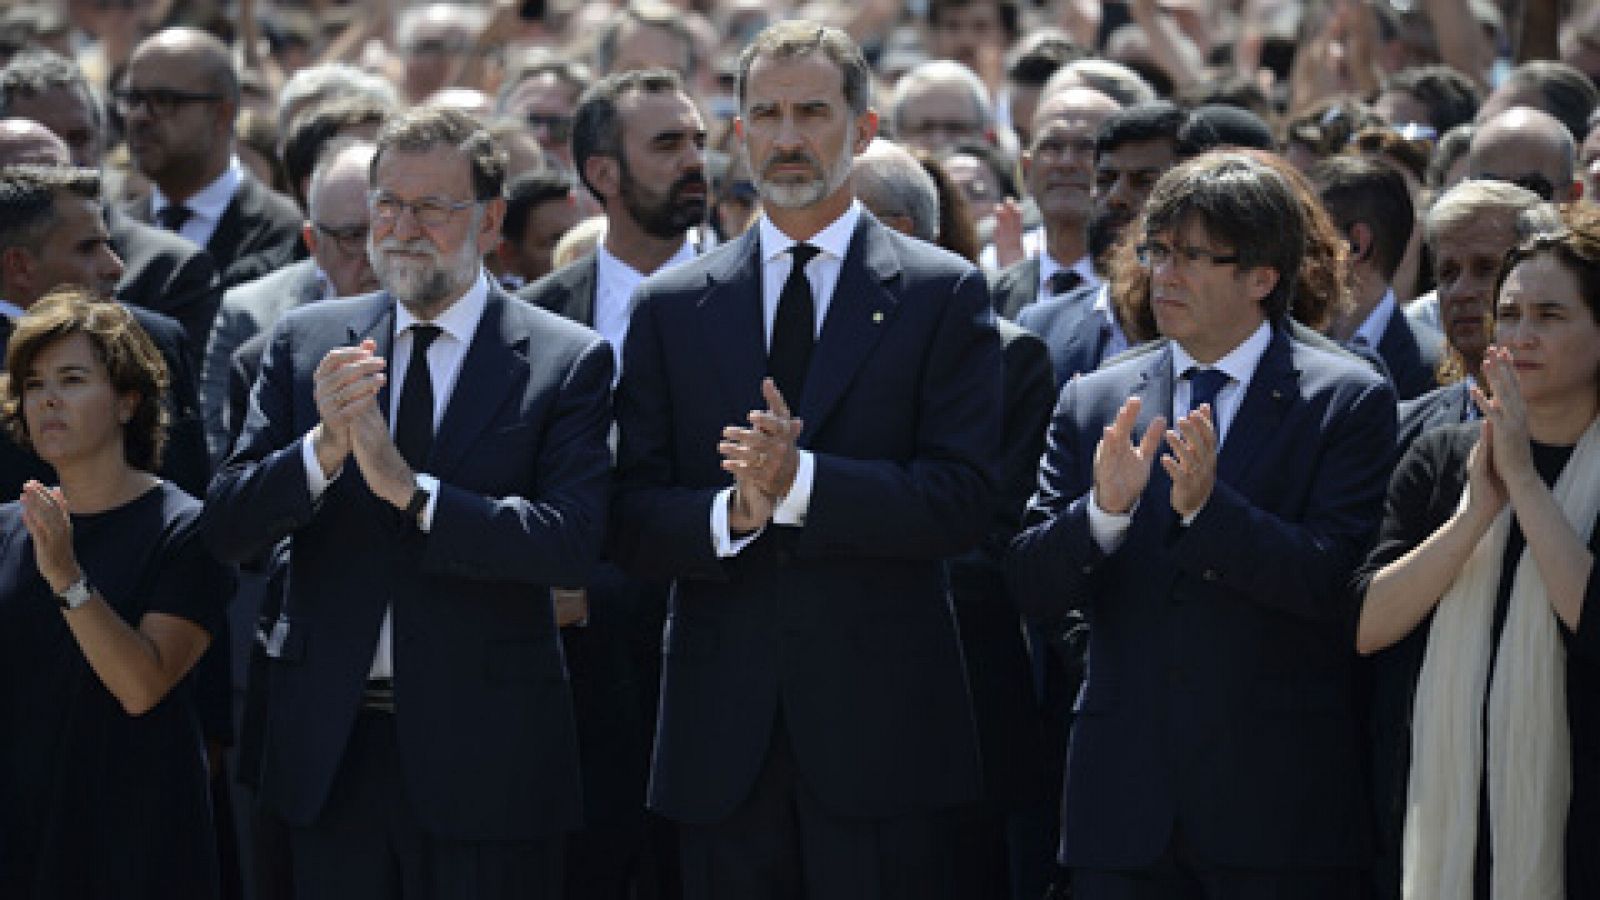 Informativo 24h: Felipe VI flanqueado por los presidentes Rajoy y Puigdemont comparte el minuto de silencio en Barcelona por las víctimas del atentado | RTVE Play